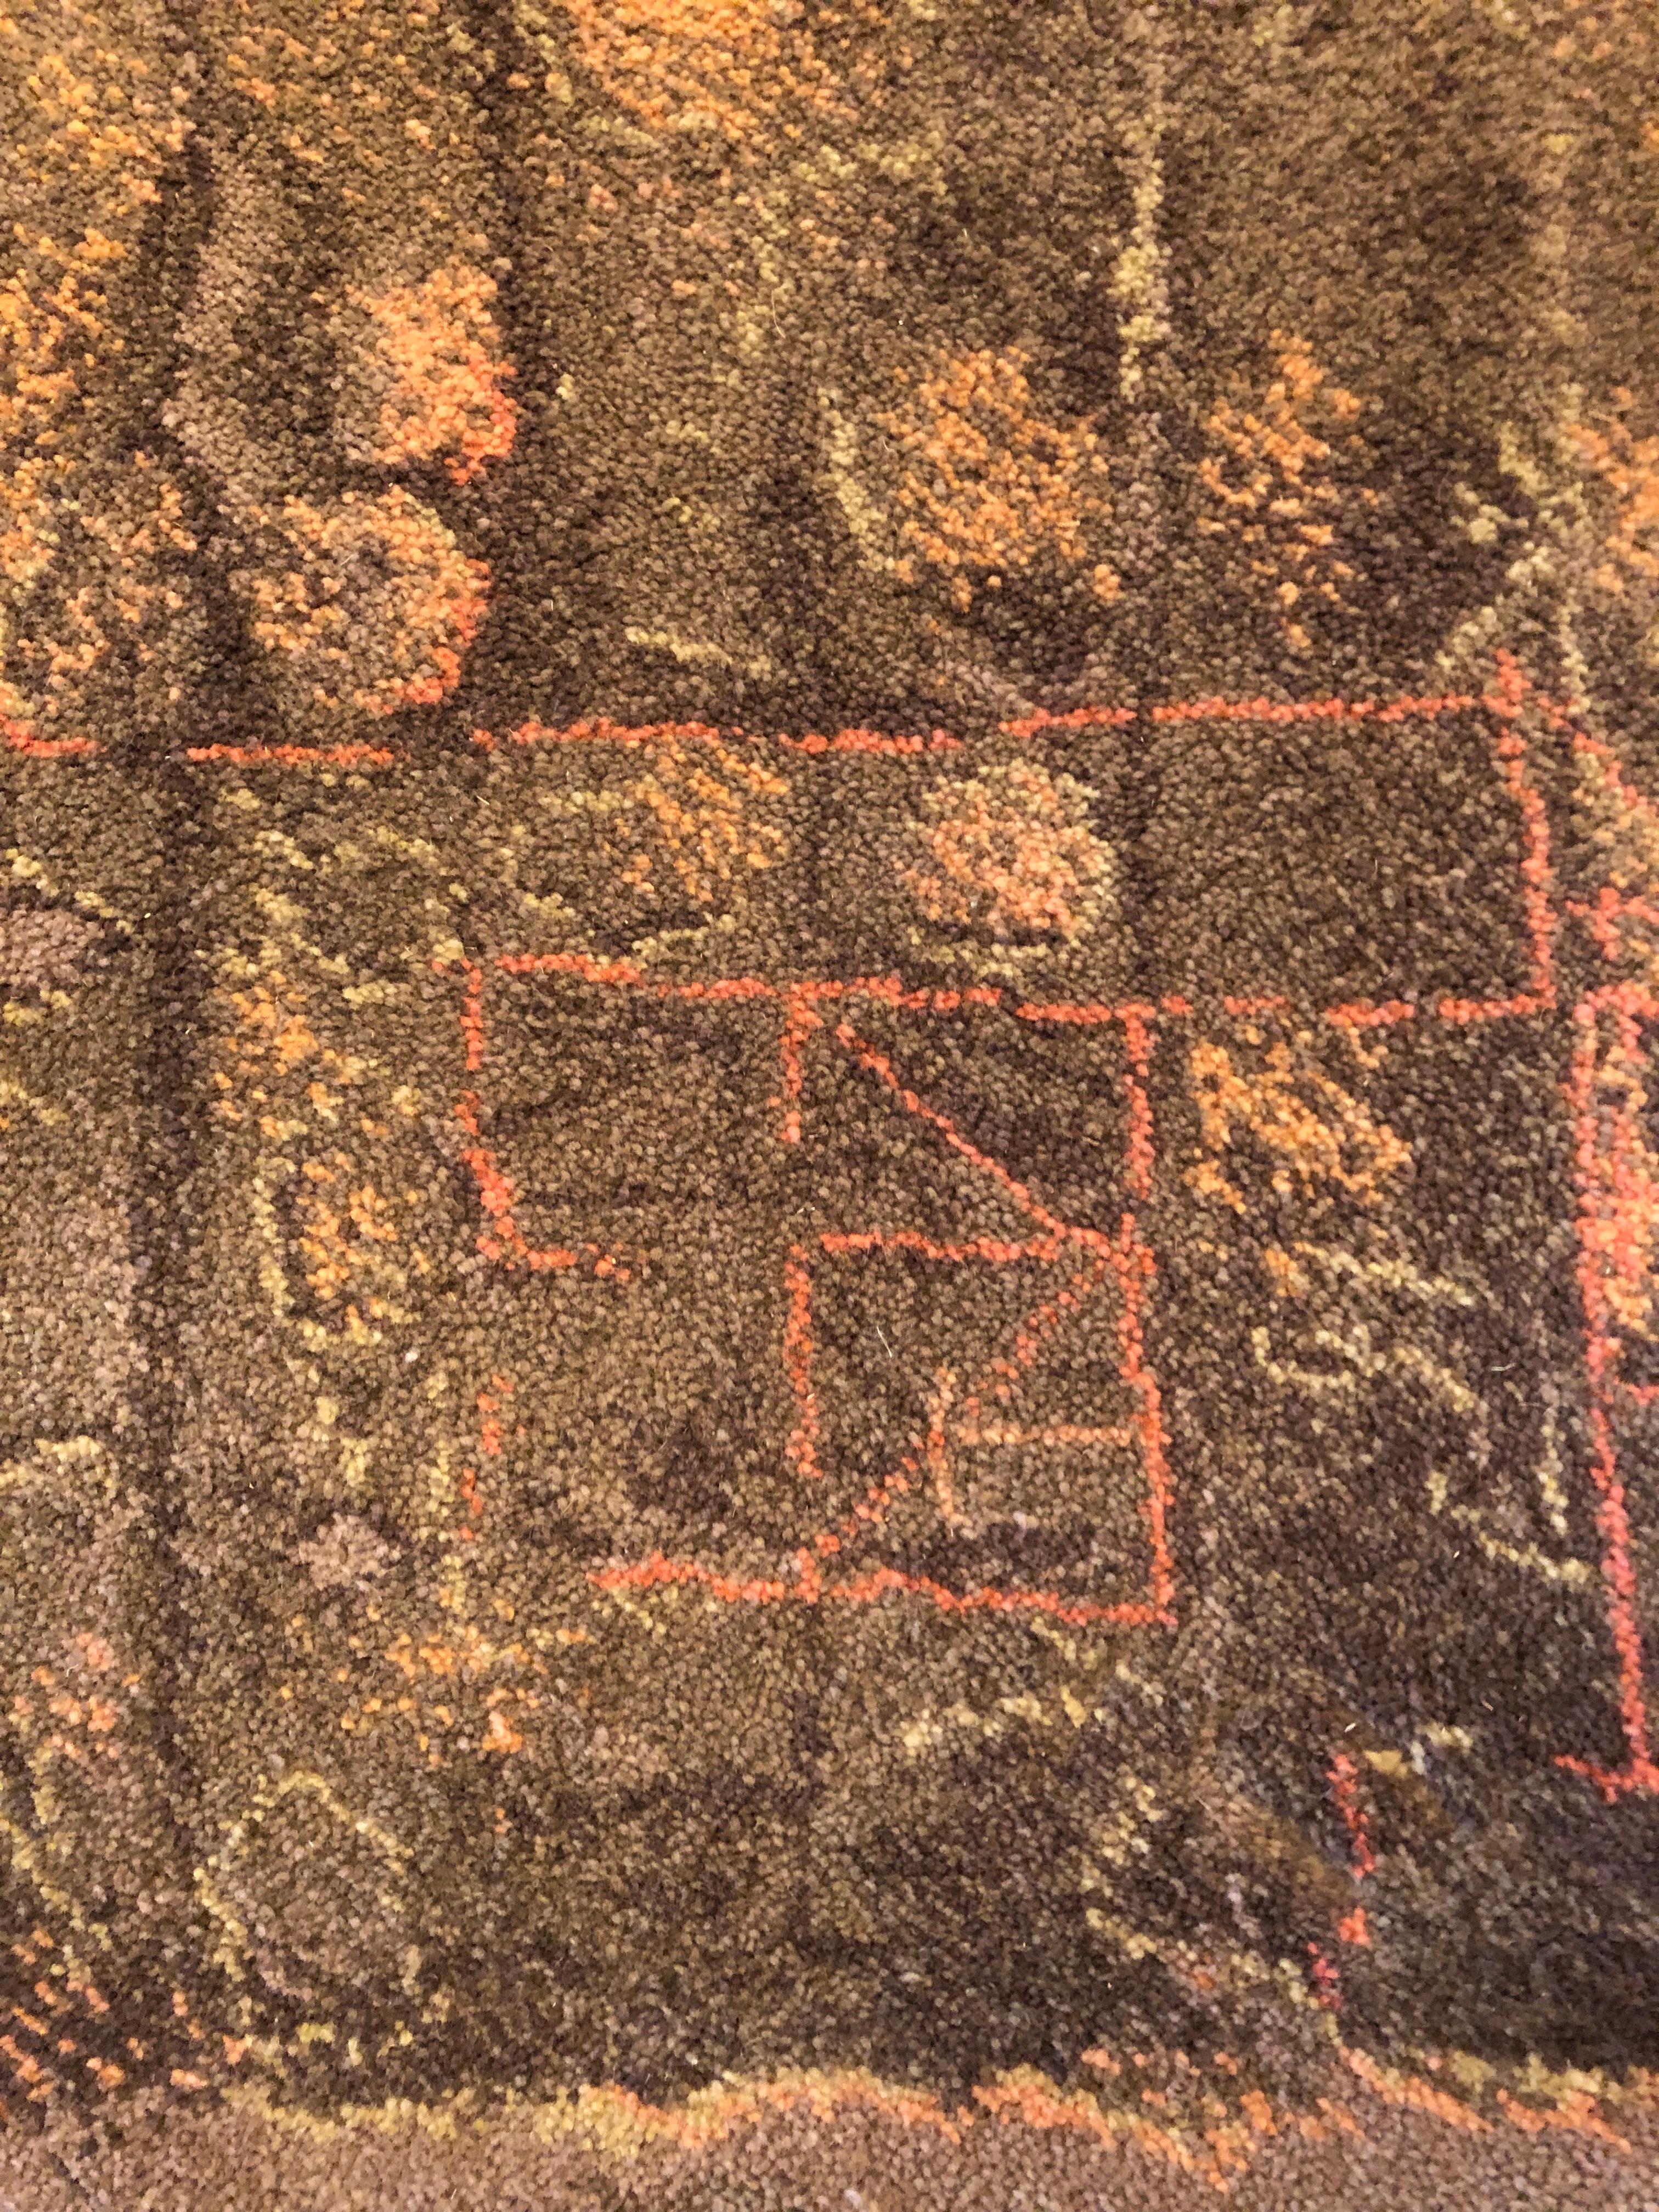 Magnifique tapis en laine fait à la main par Paul au Danemark, vers 1980, qui a créé de superbes tapis en s'inspirant des œuvres du célèbre artiste Paul Klee. Les compositions modernes emblématiques de Klee étaient abstraites et hiéroglypiques, et